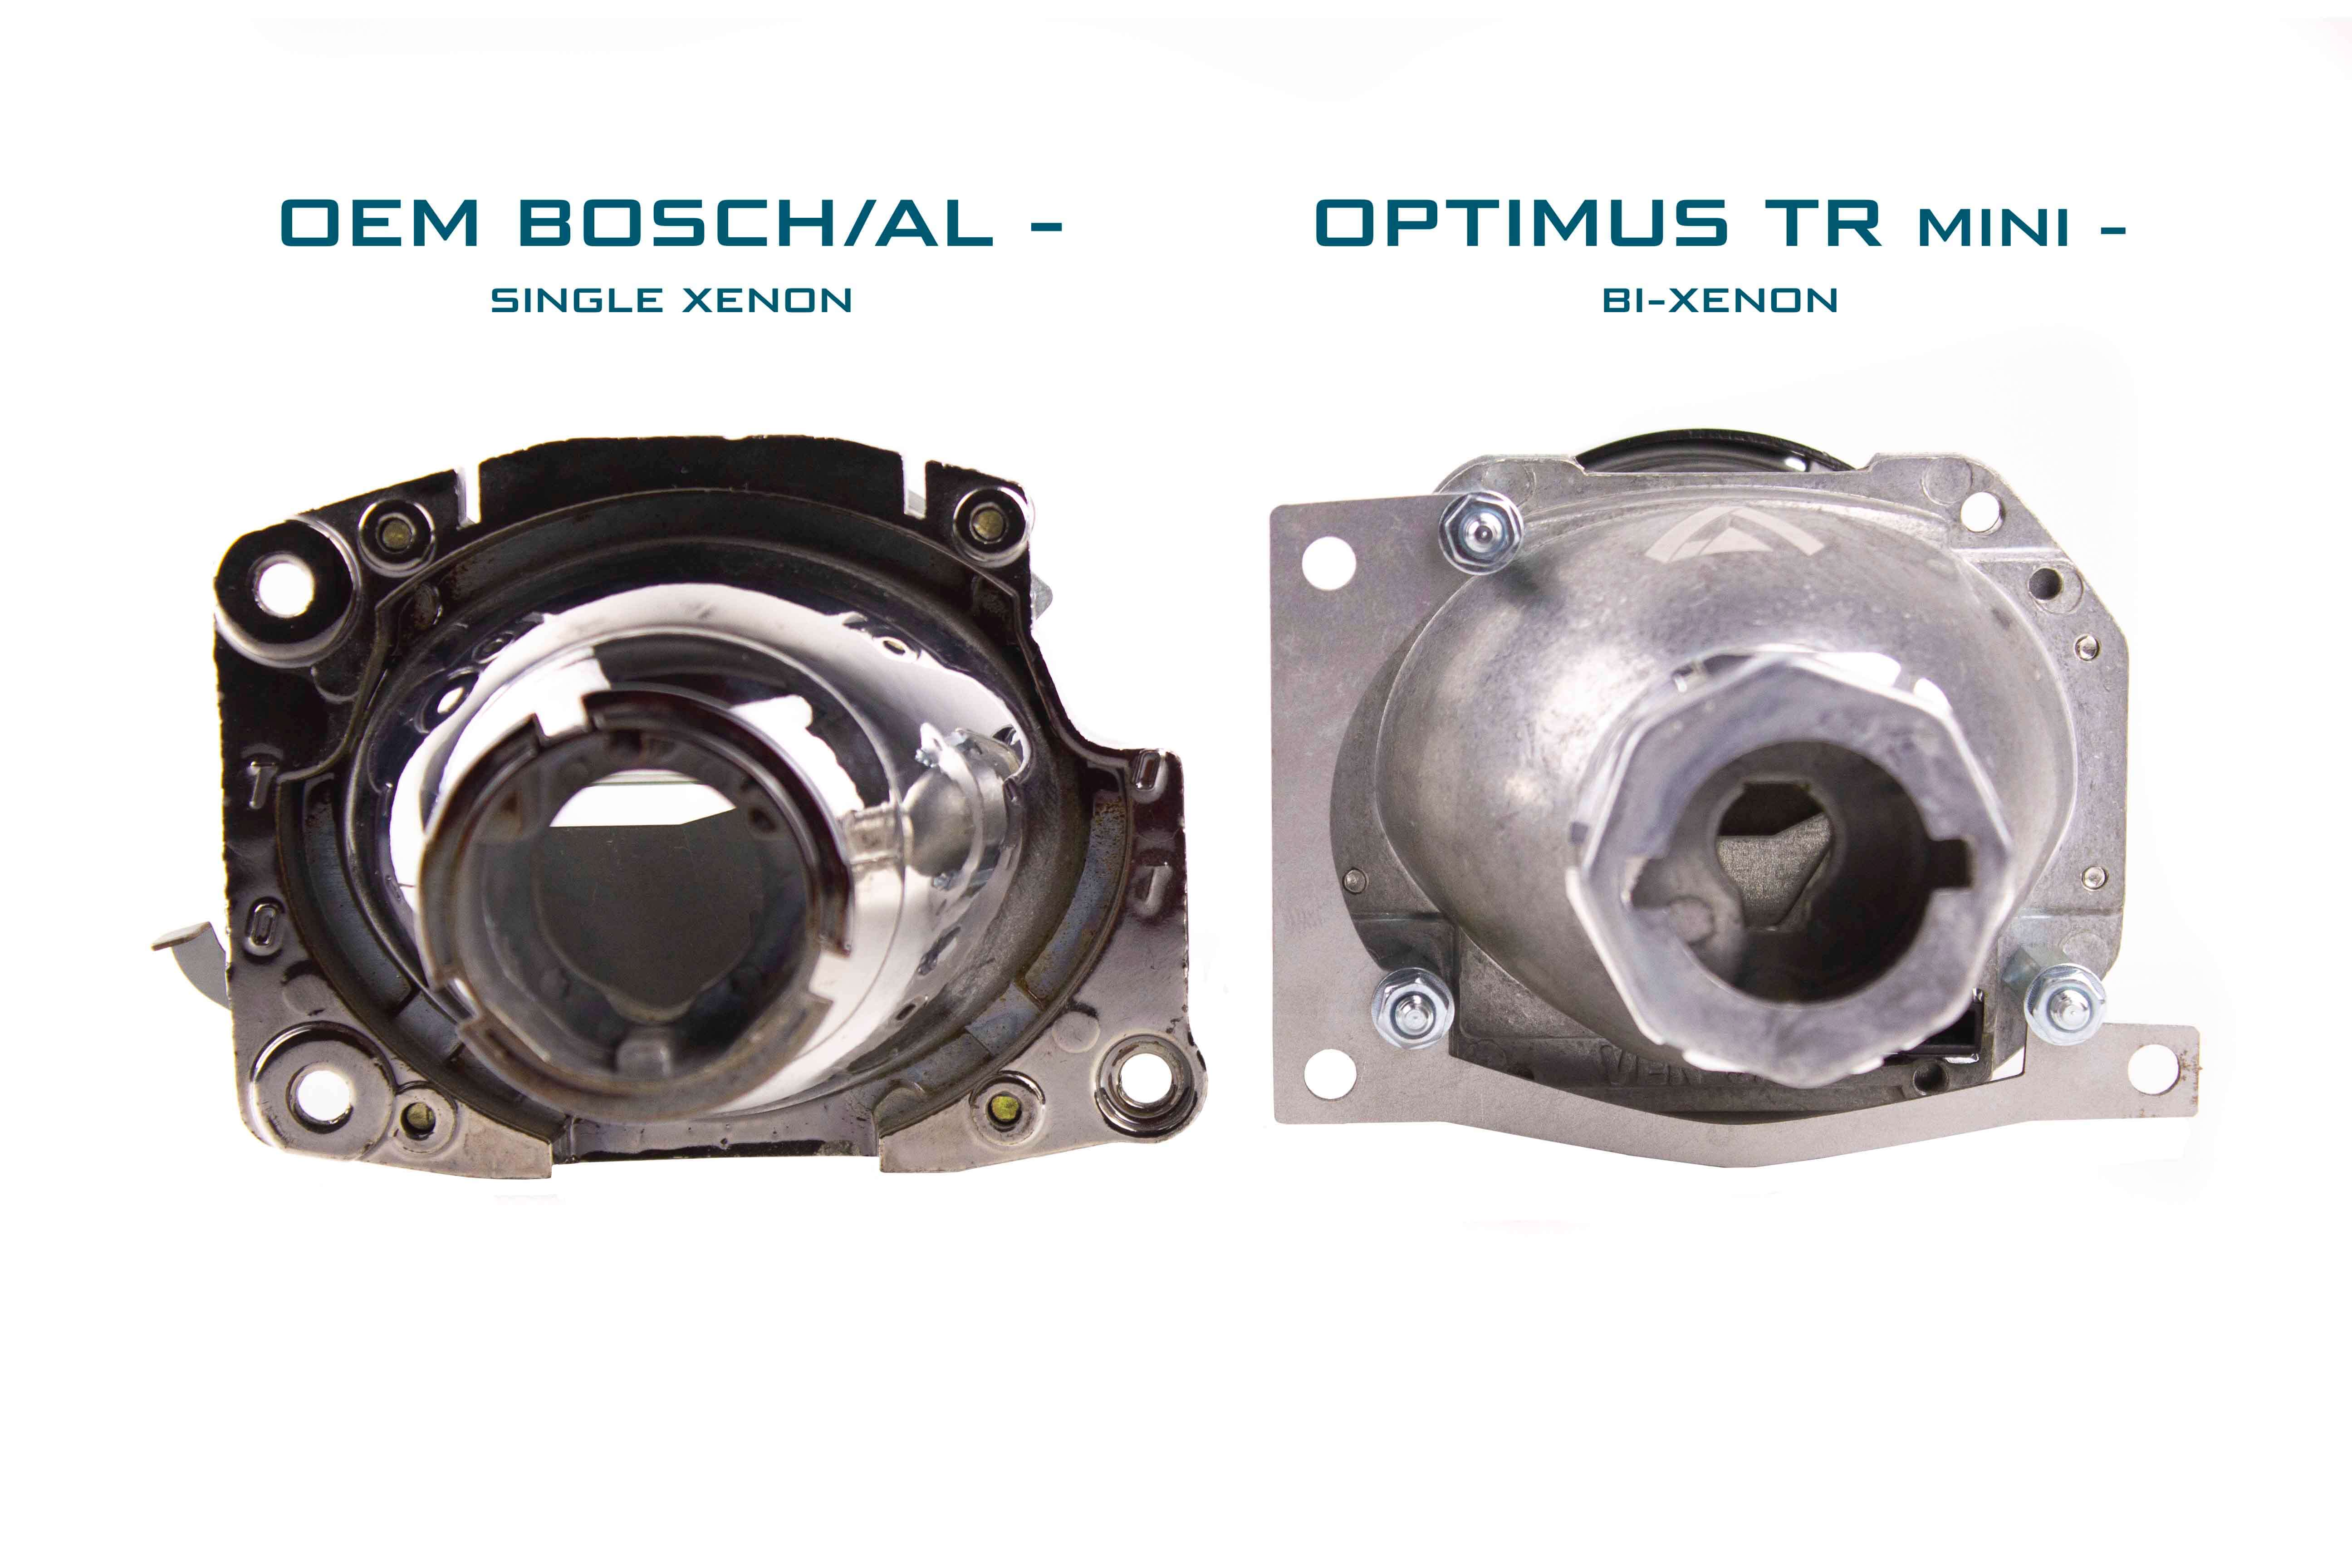 BMW 3 E46 98-05 bi-xenon koplamp reparatie & upgrade kit voor Bosch/AL enkele xenon koplampen